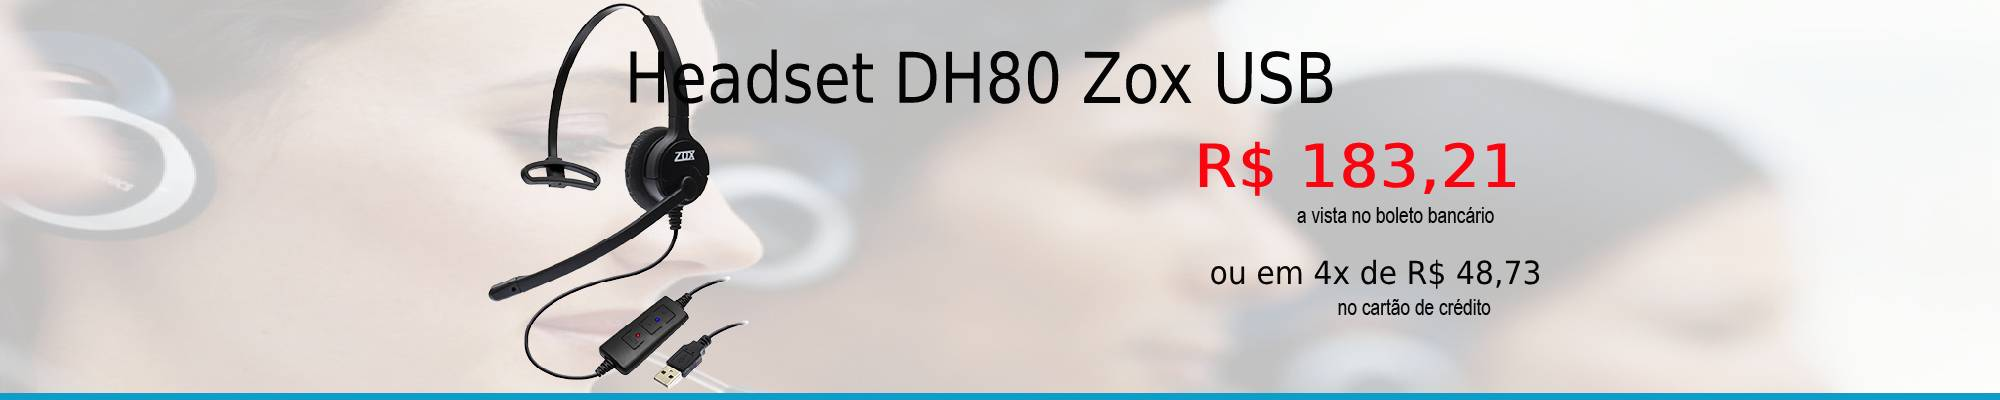 Headset USB VoIP DH-80 Zox com cancelador de rudo